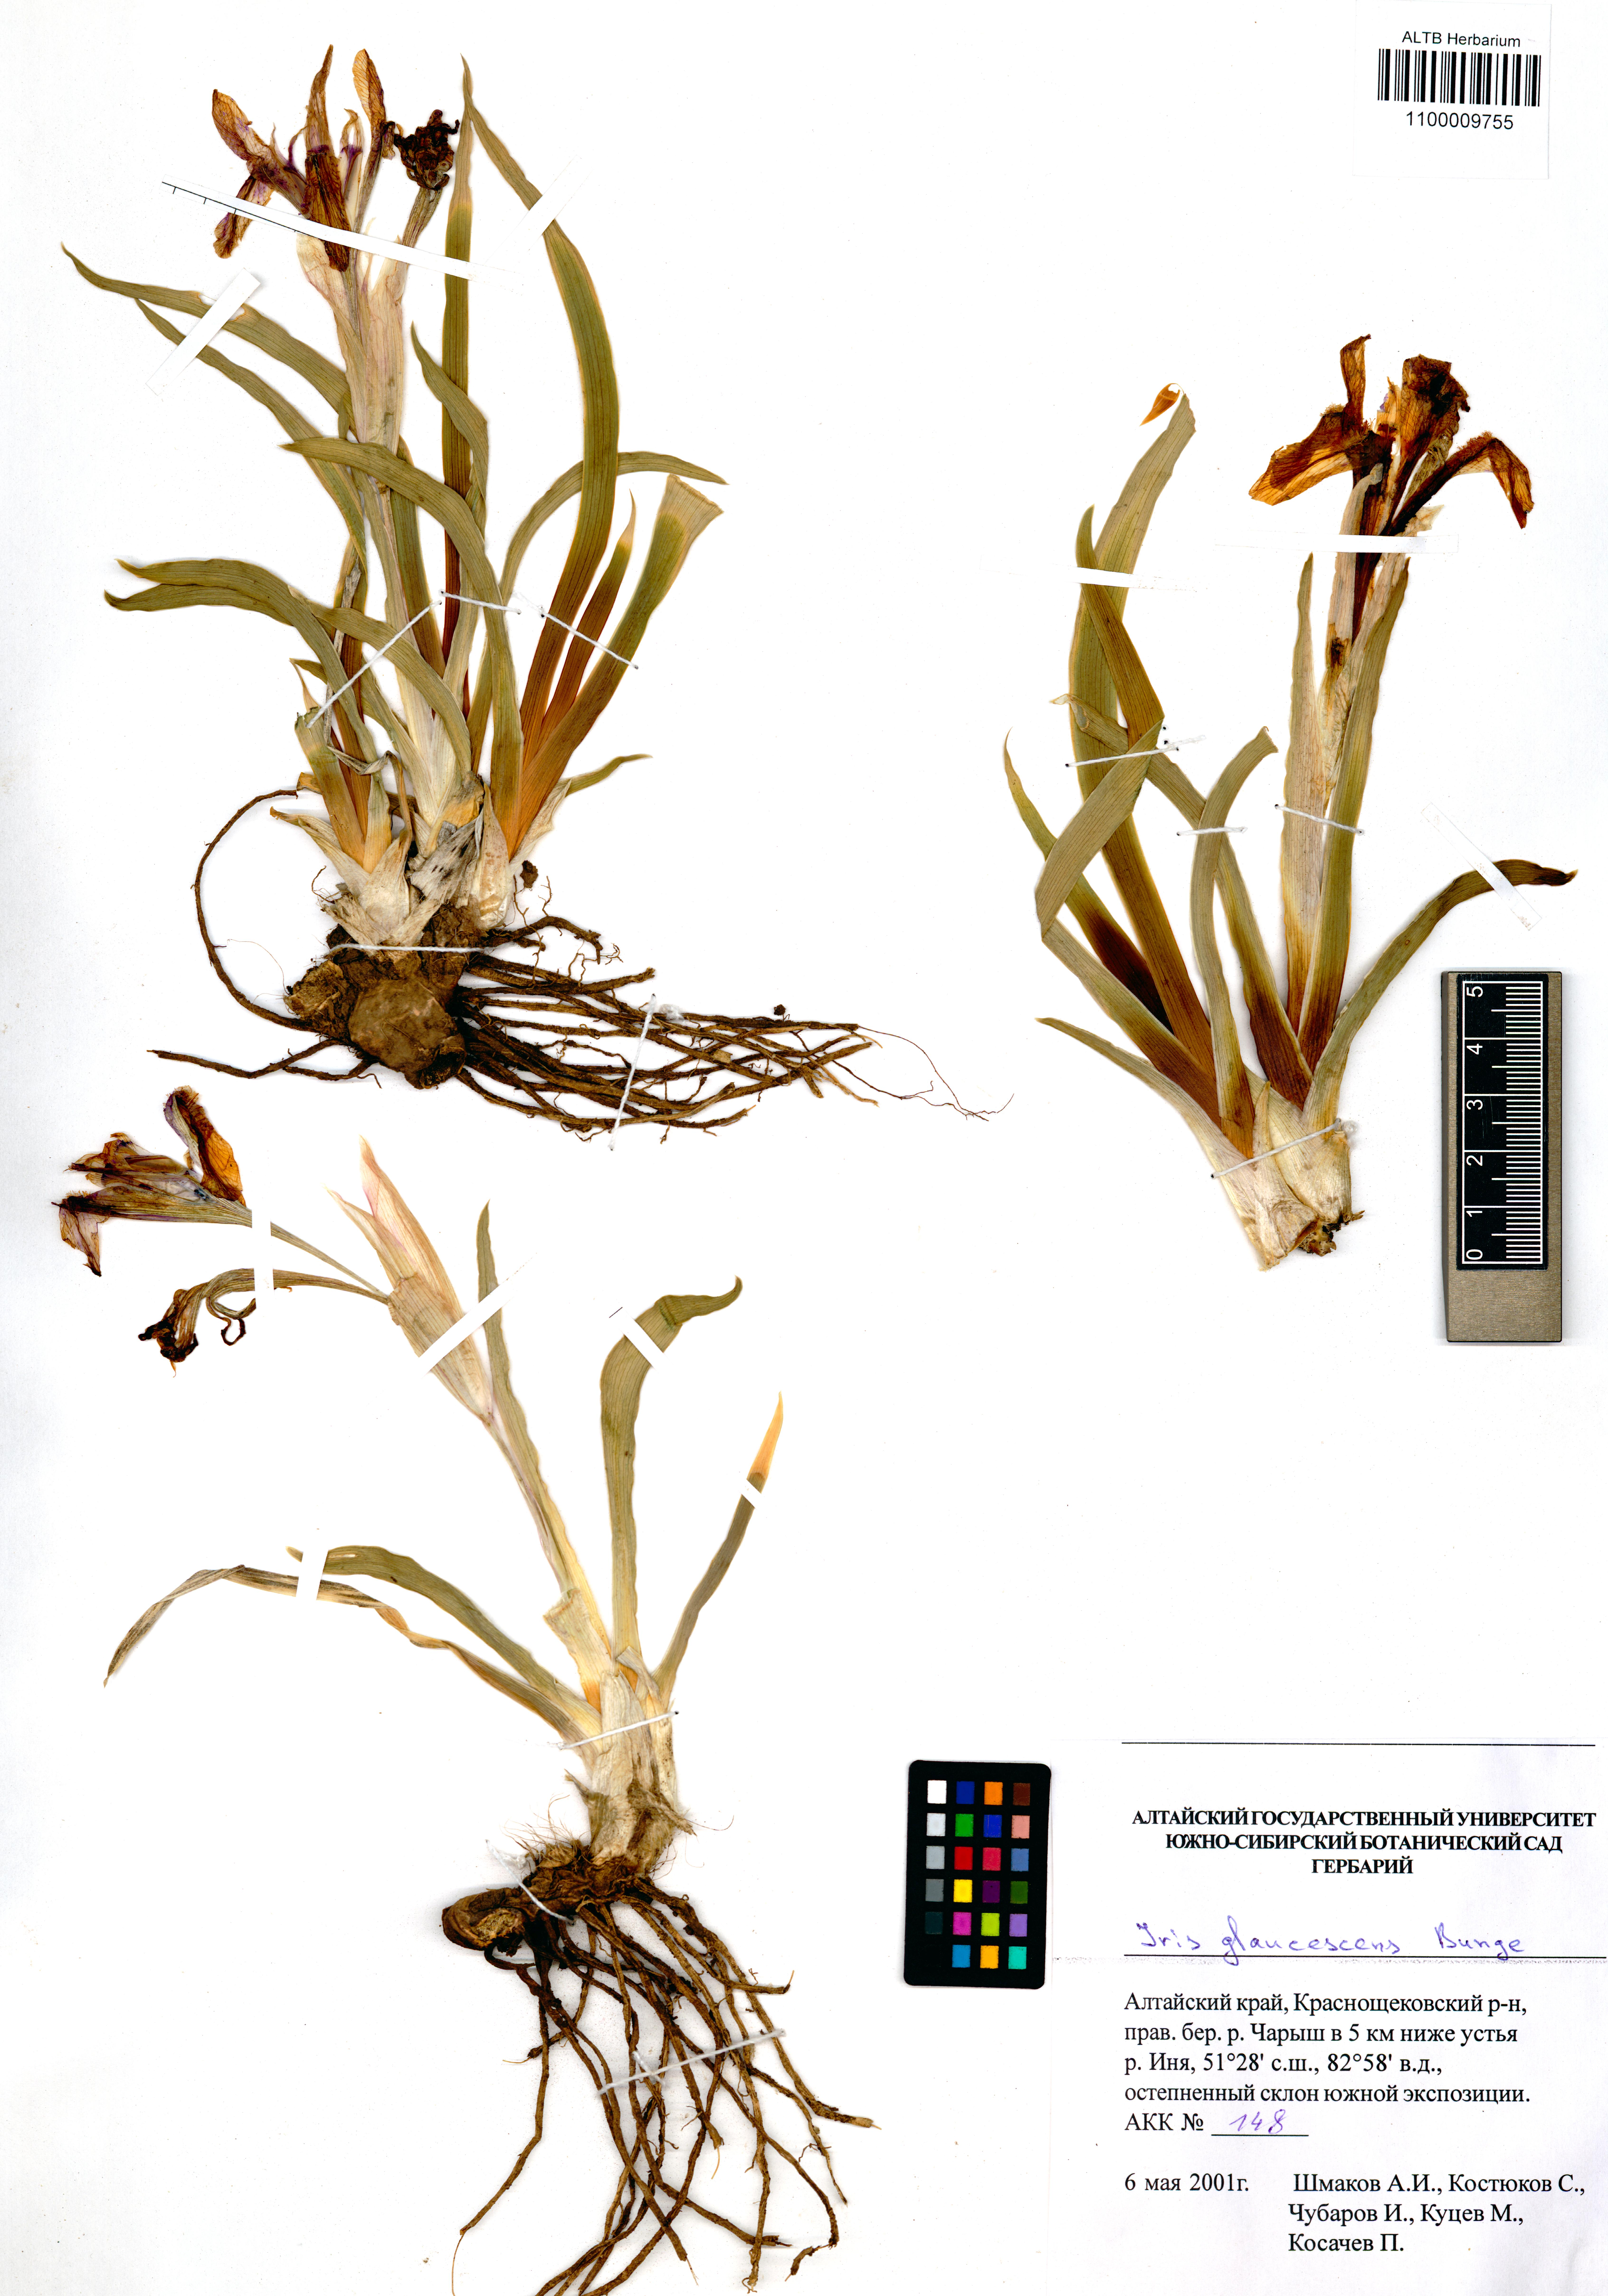 Iris glaucescens Bunge